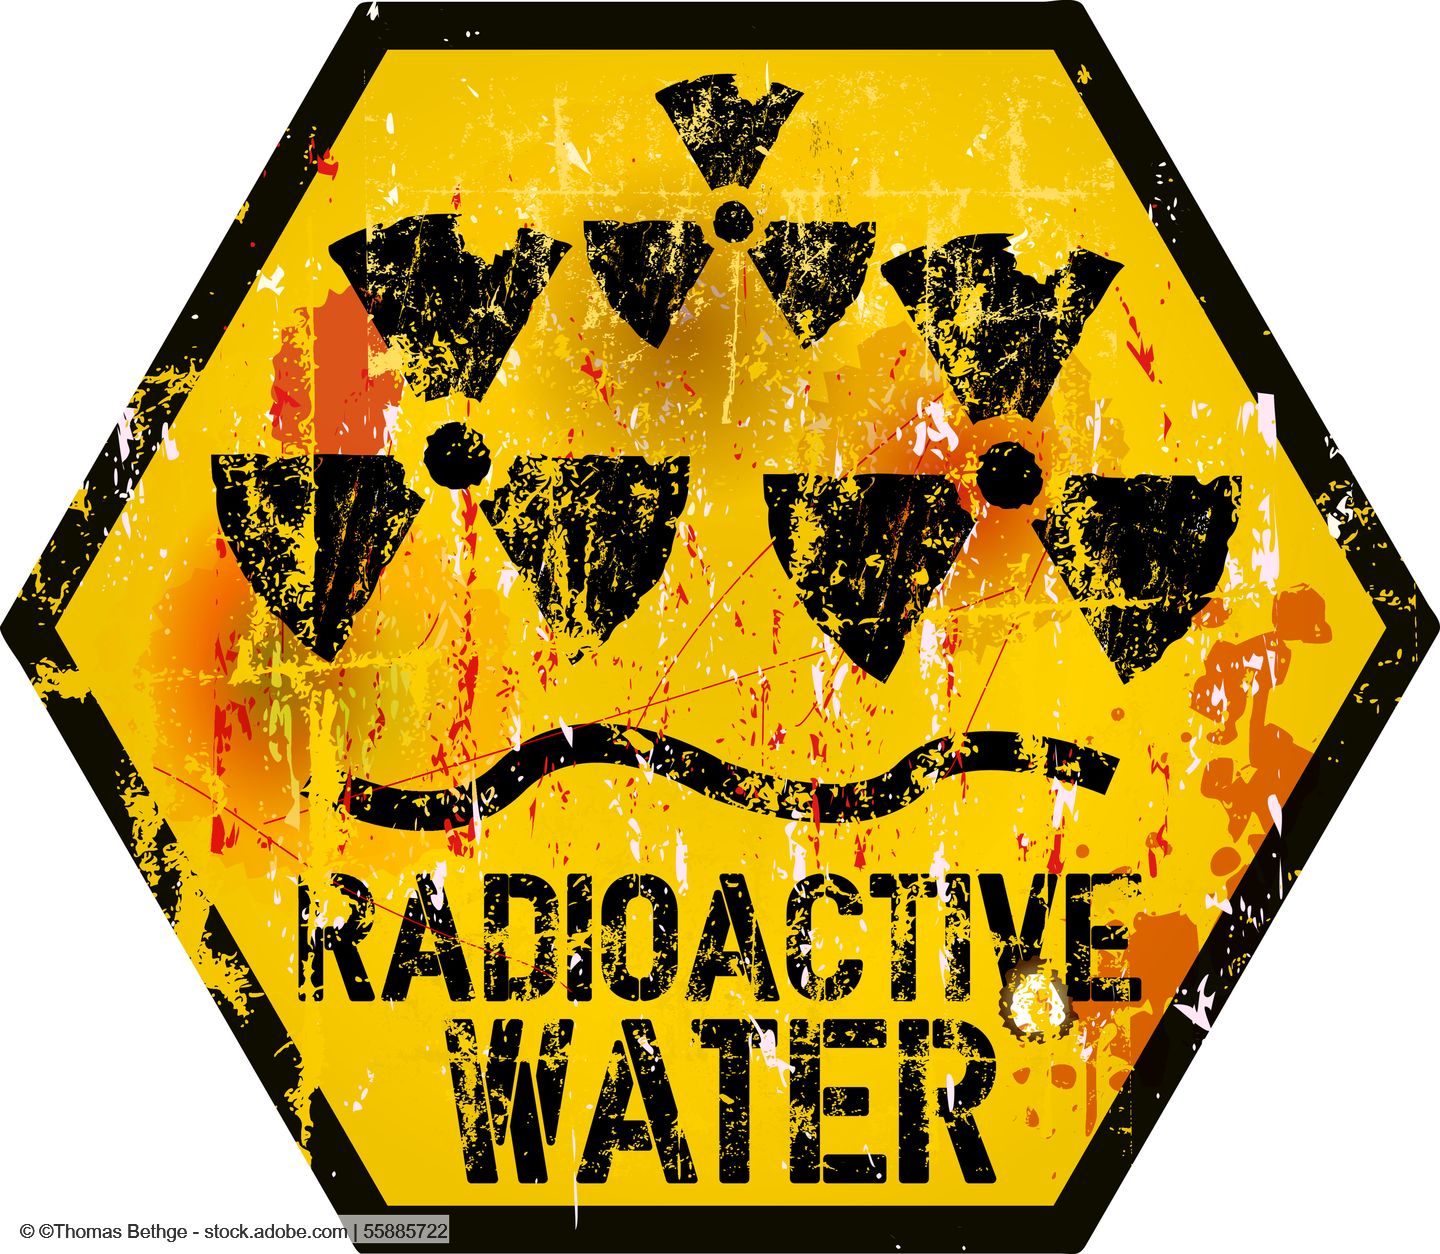 Filtermembran von der ETH Zürich könnte verseuchtes Wasser von Fukushima reinigen